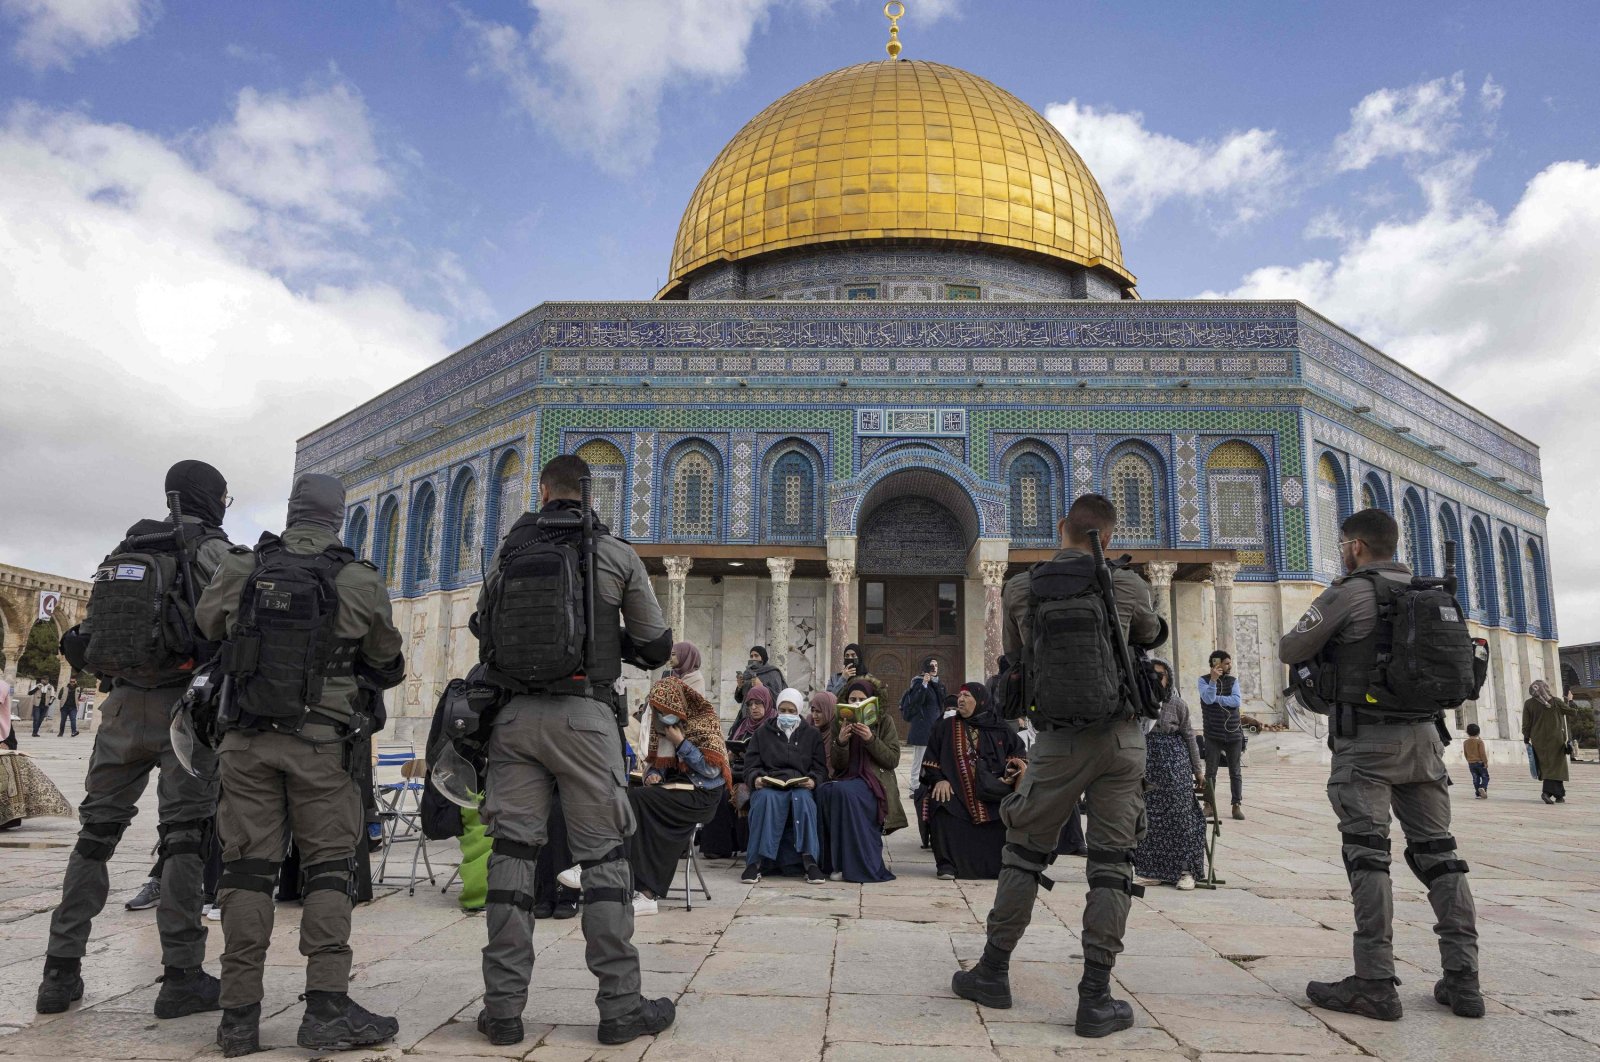 Intelijen Israel mempertanyakan imam Masjid Al-Aqsa